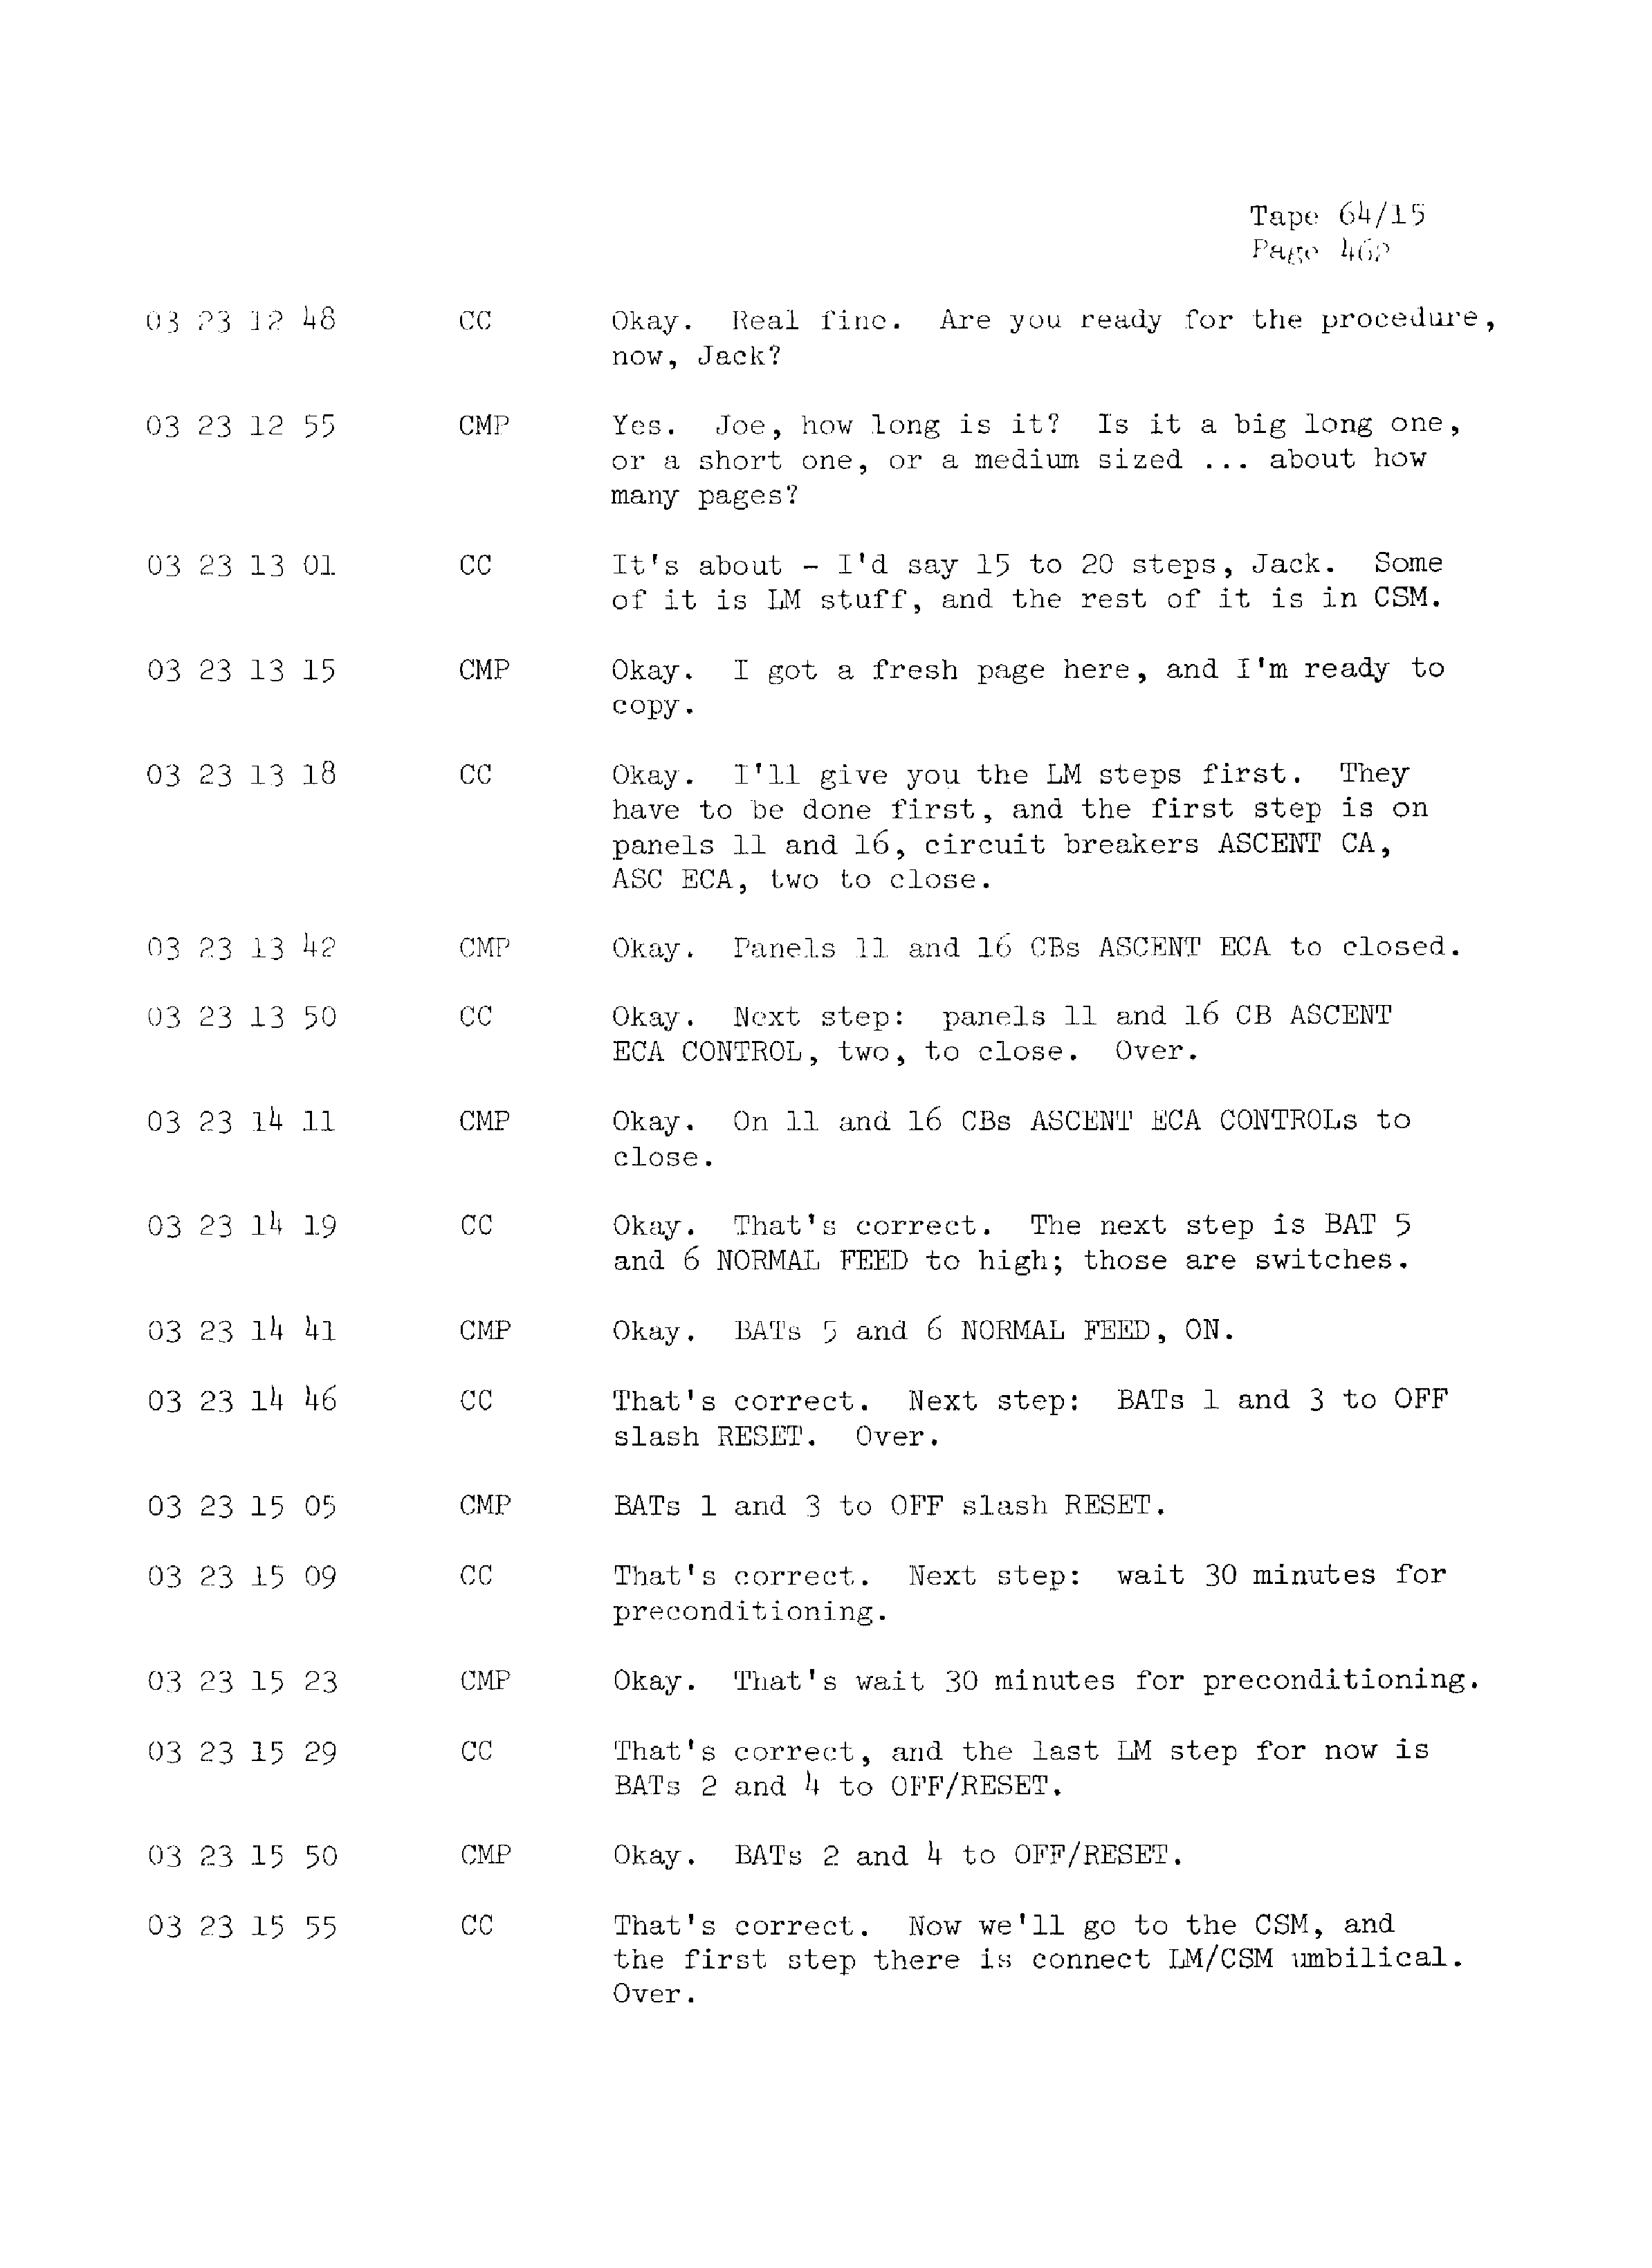 Page 469 of Apollo 13’s original transcript